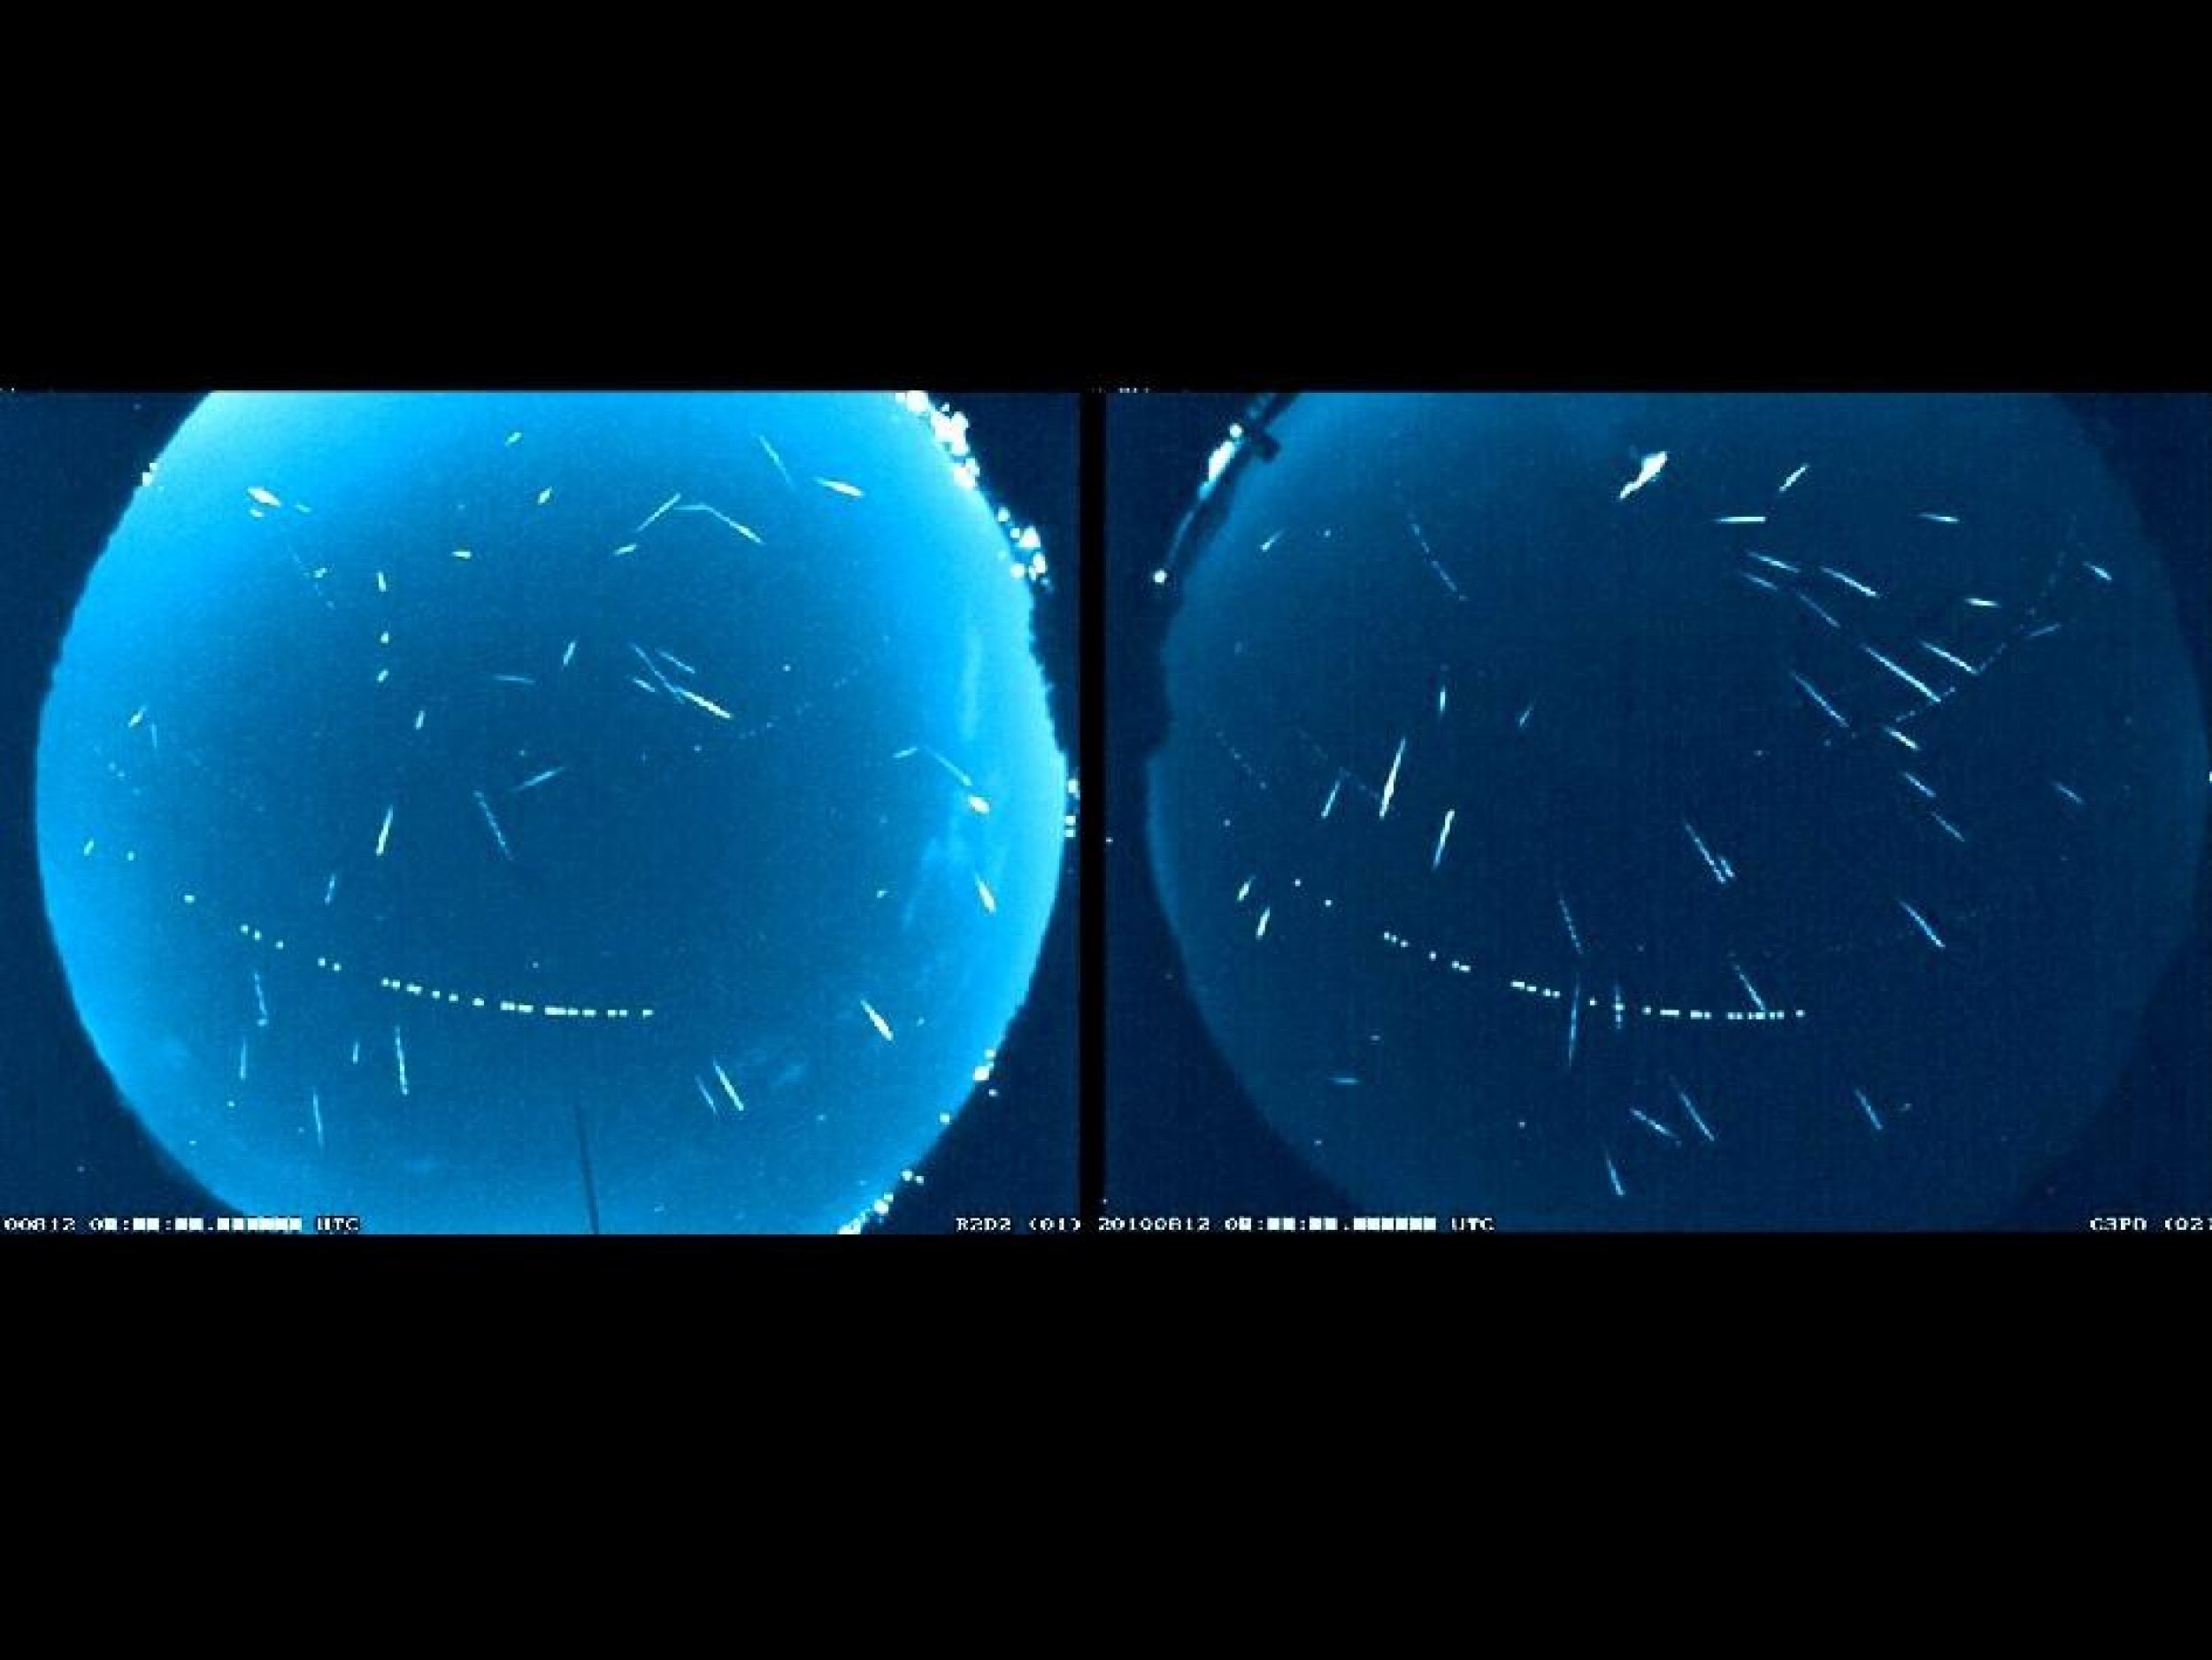 Composite of 2010 Perseid Meteors